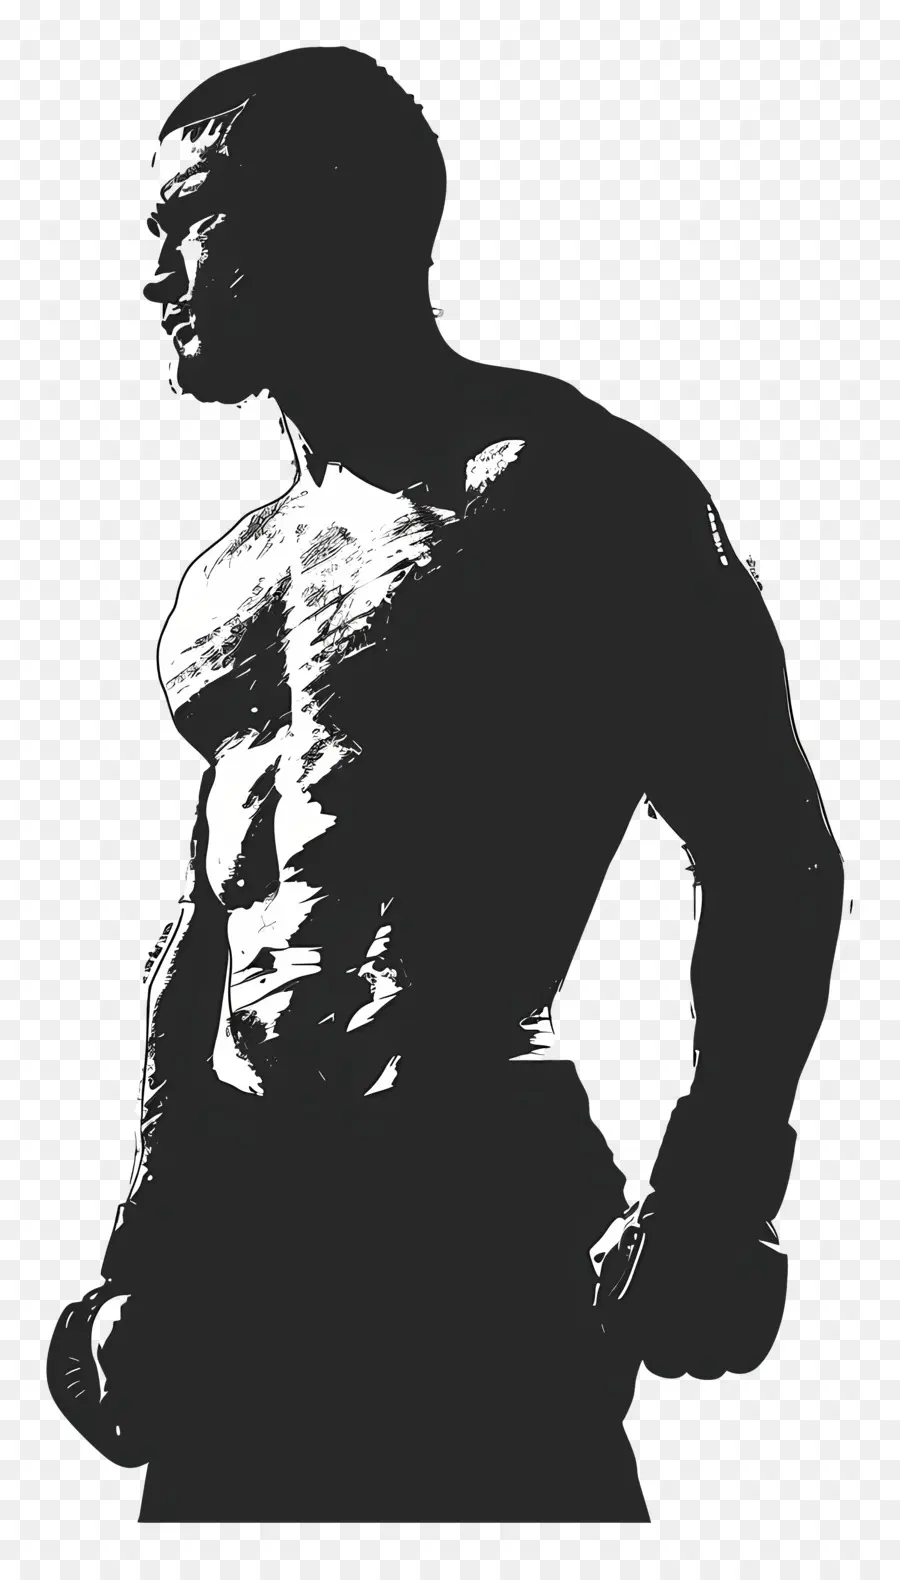 UFC Man Silhouette Đàn ông thời trang áo phông màu đen Silhouette - Hình bóng của người đàn ông mặc trang phục màu đen